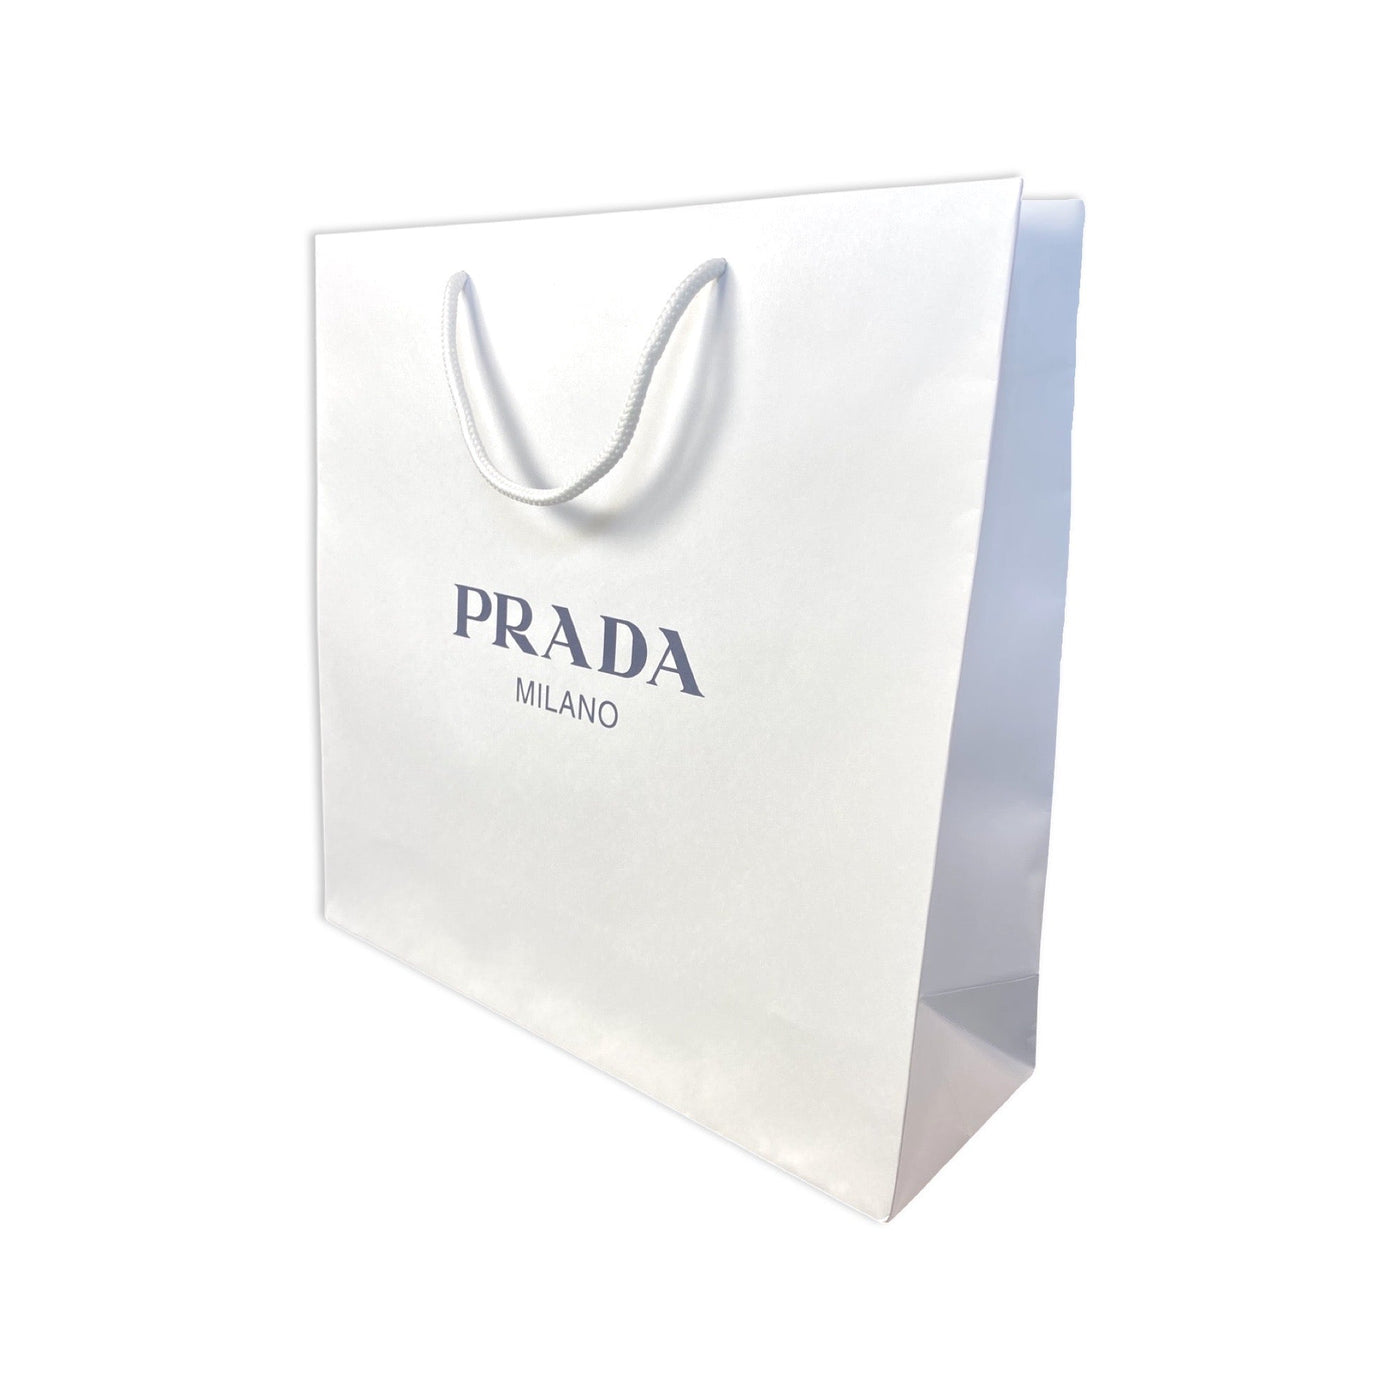 Prada Logo White Paper Designer Shopping Gift Bag Medium Set of 2 - LUXURYMRKT